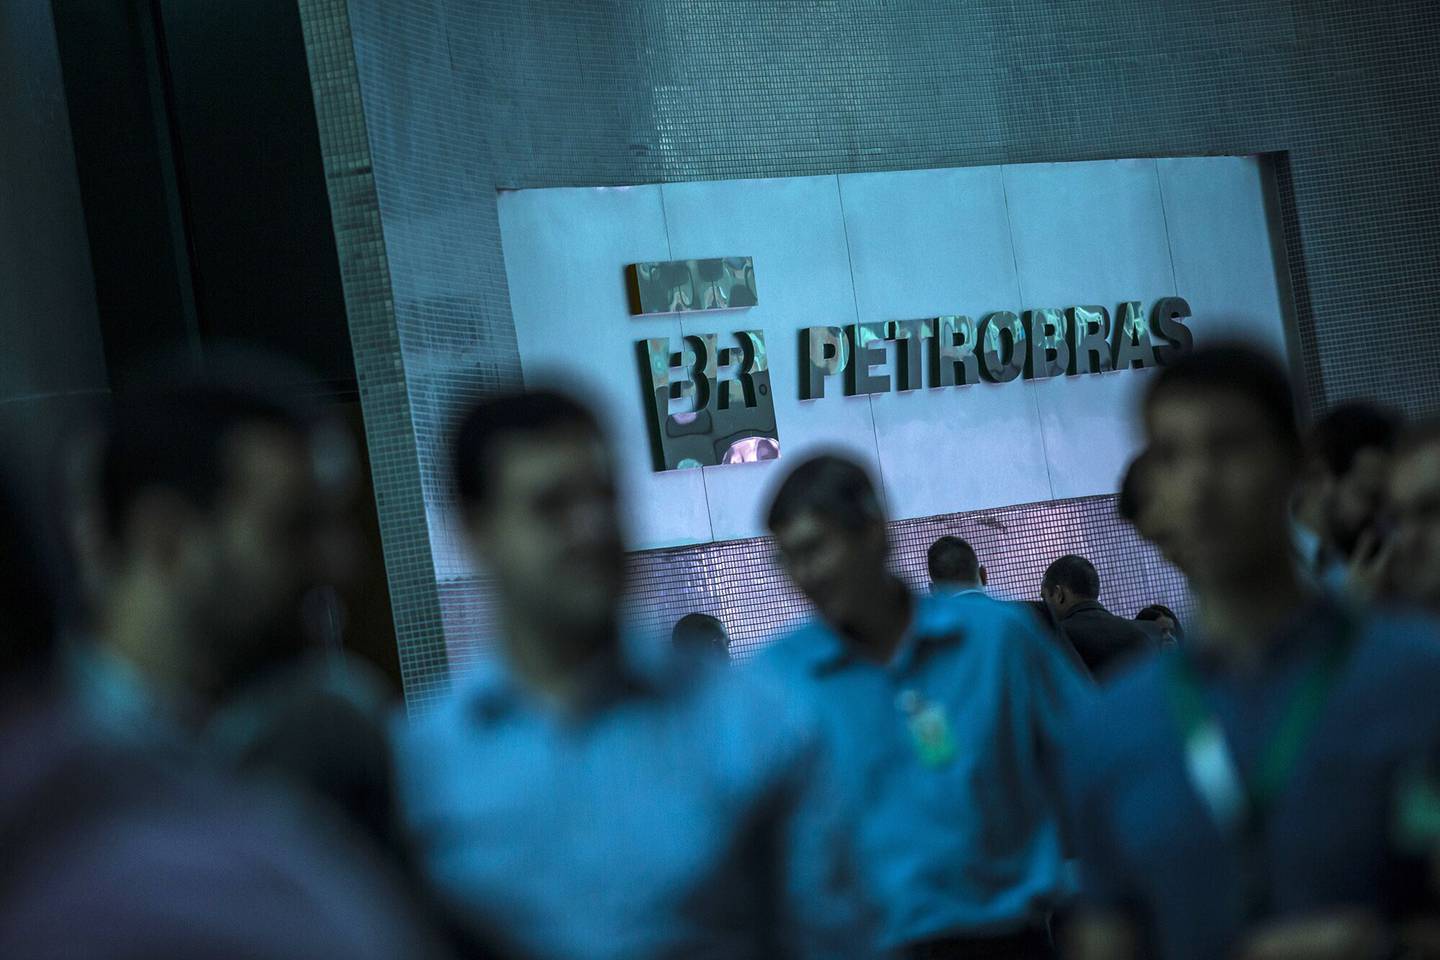 Los trabajadores pasan junto a la señalización de Petroleo Brasileiro S.A. en la sede de la empresa en Río de Janeiro, Brasil. Fotógrafo: Dado Galdieri/Bloomberg